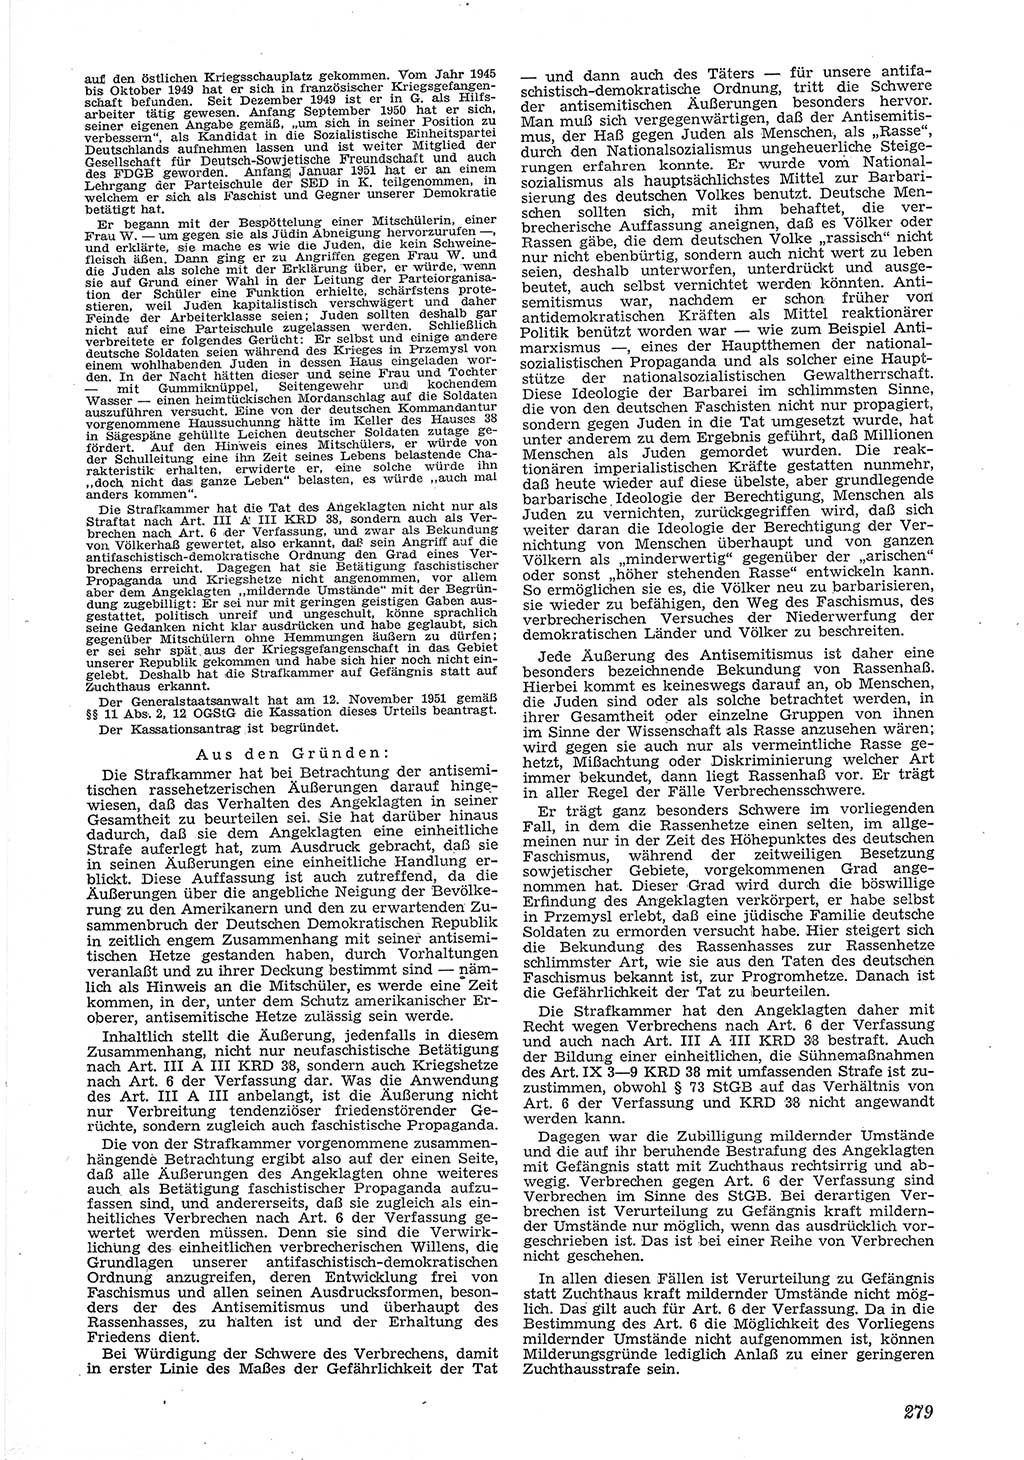 Neue Justiz (NJ), Zeitschrift für Recht und Rechtswissenschaft [Deutsche Demokratische Republik (DDR)], 6. Jahrgang 1952, Seite 279 (NJ DDR 1952, S. 279)